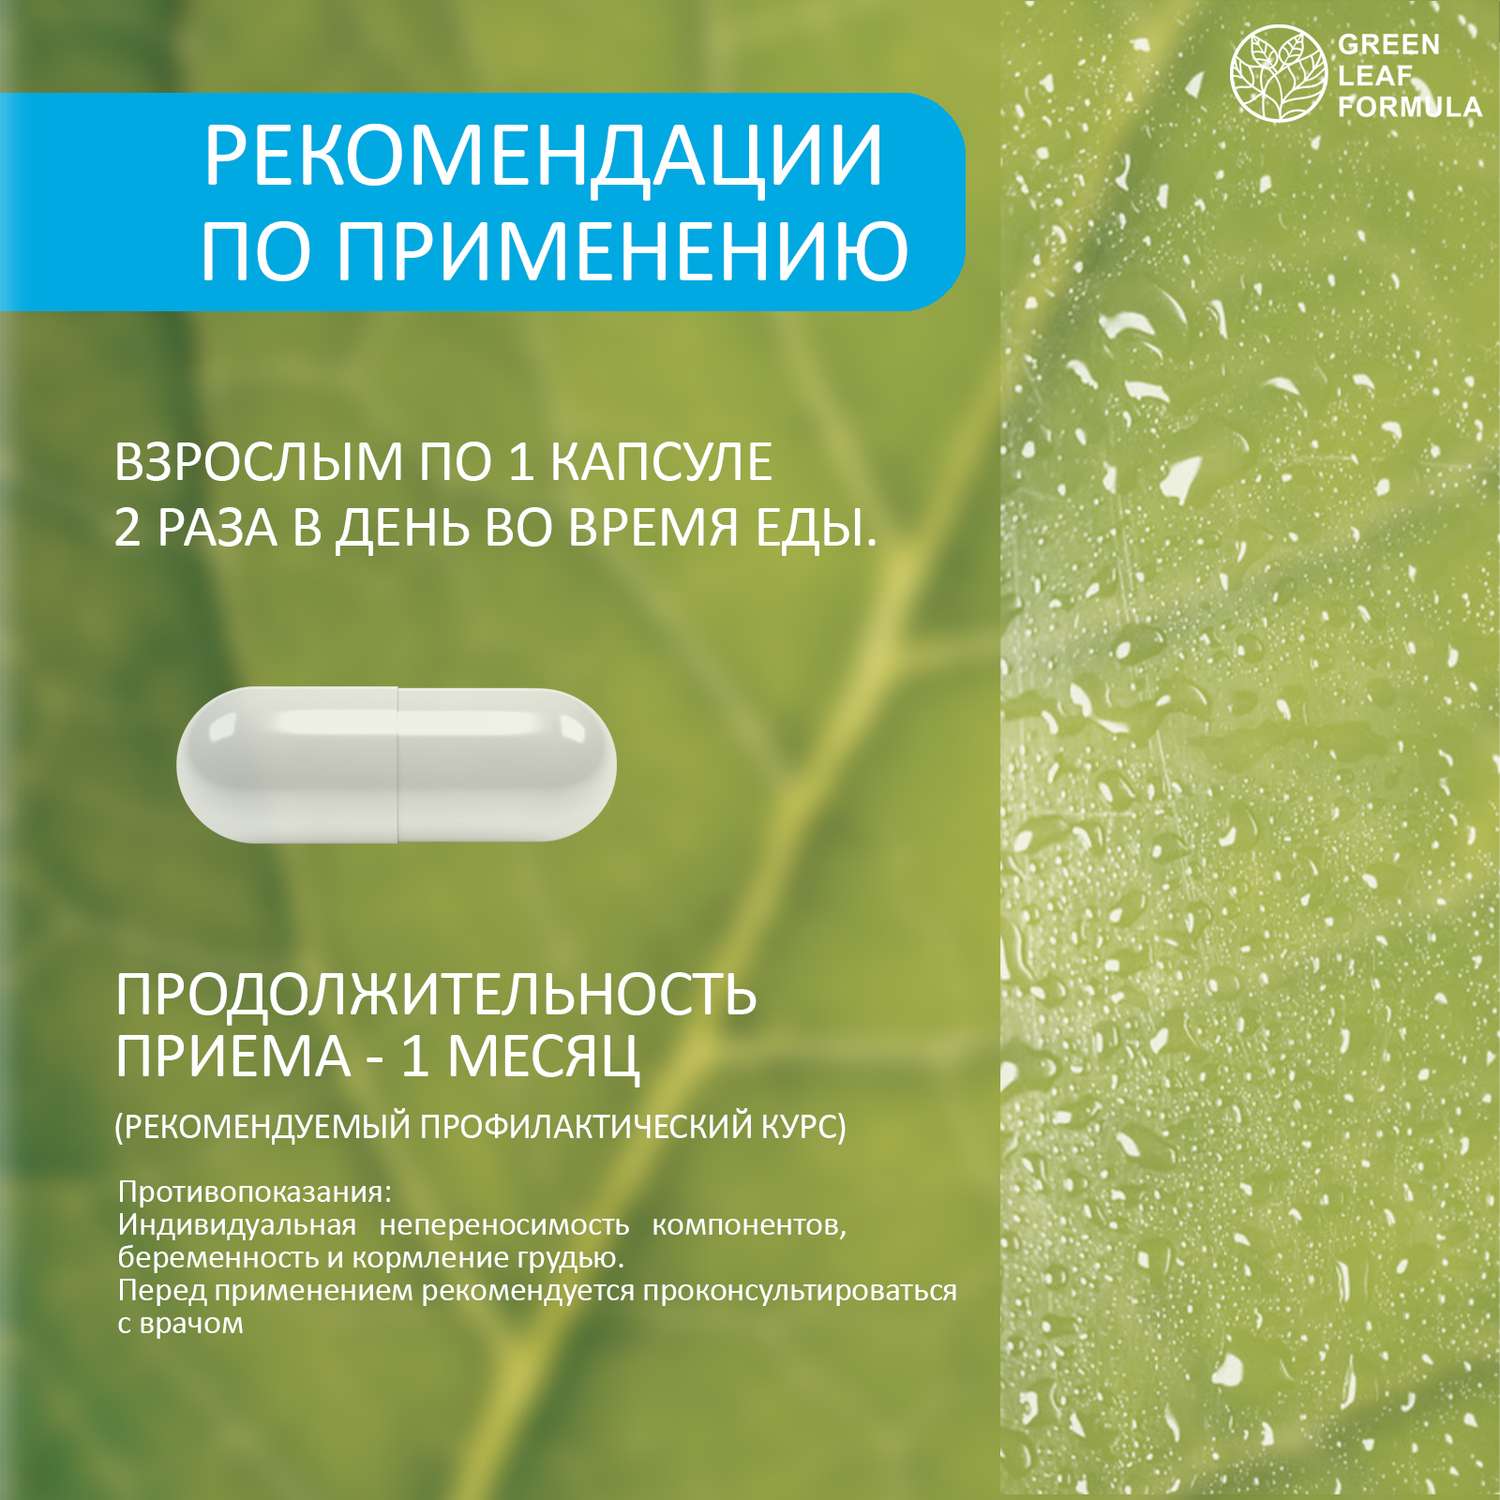 Метабиотик для кишечника Green Leaf Formula ферменты для пищеварения L-карнитин для сжигания жира для иммунитета - фото 9